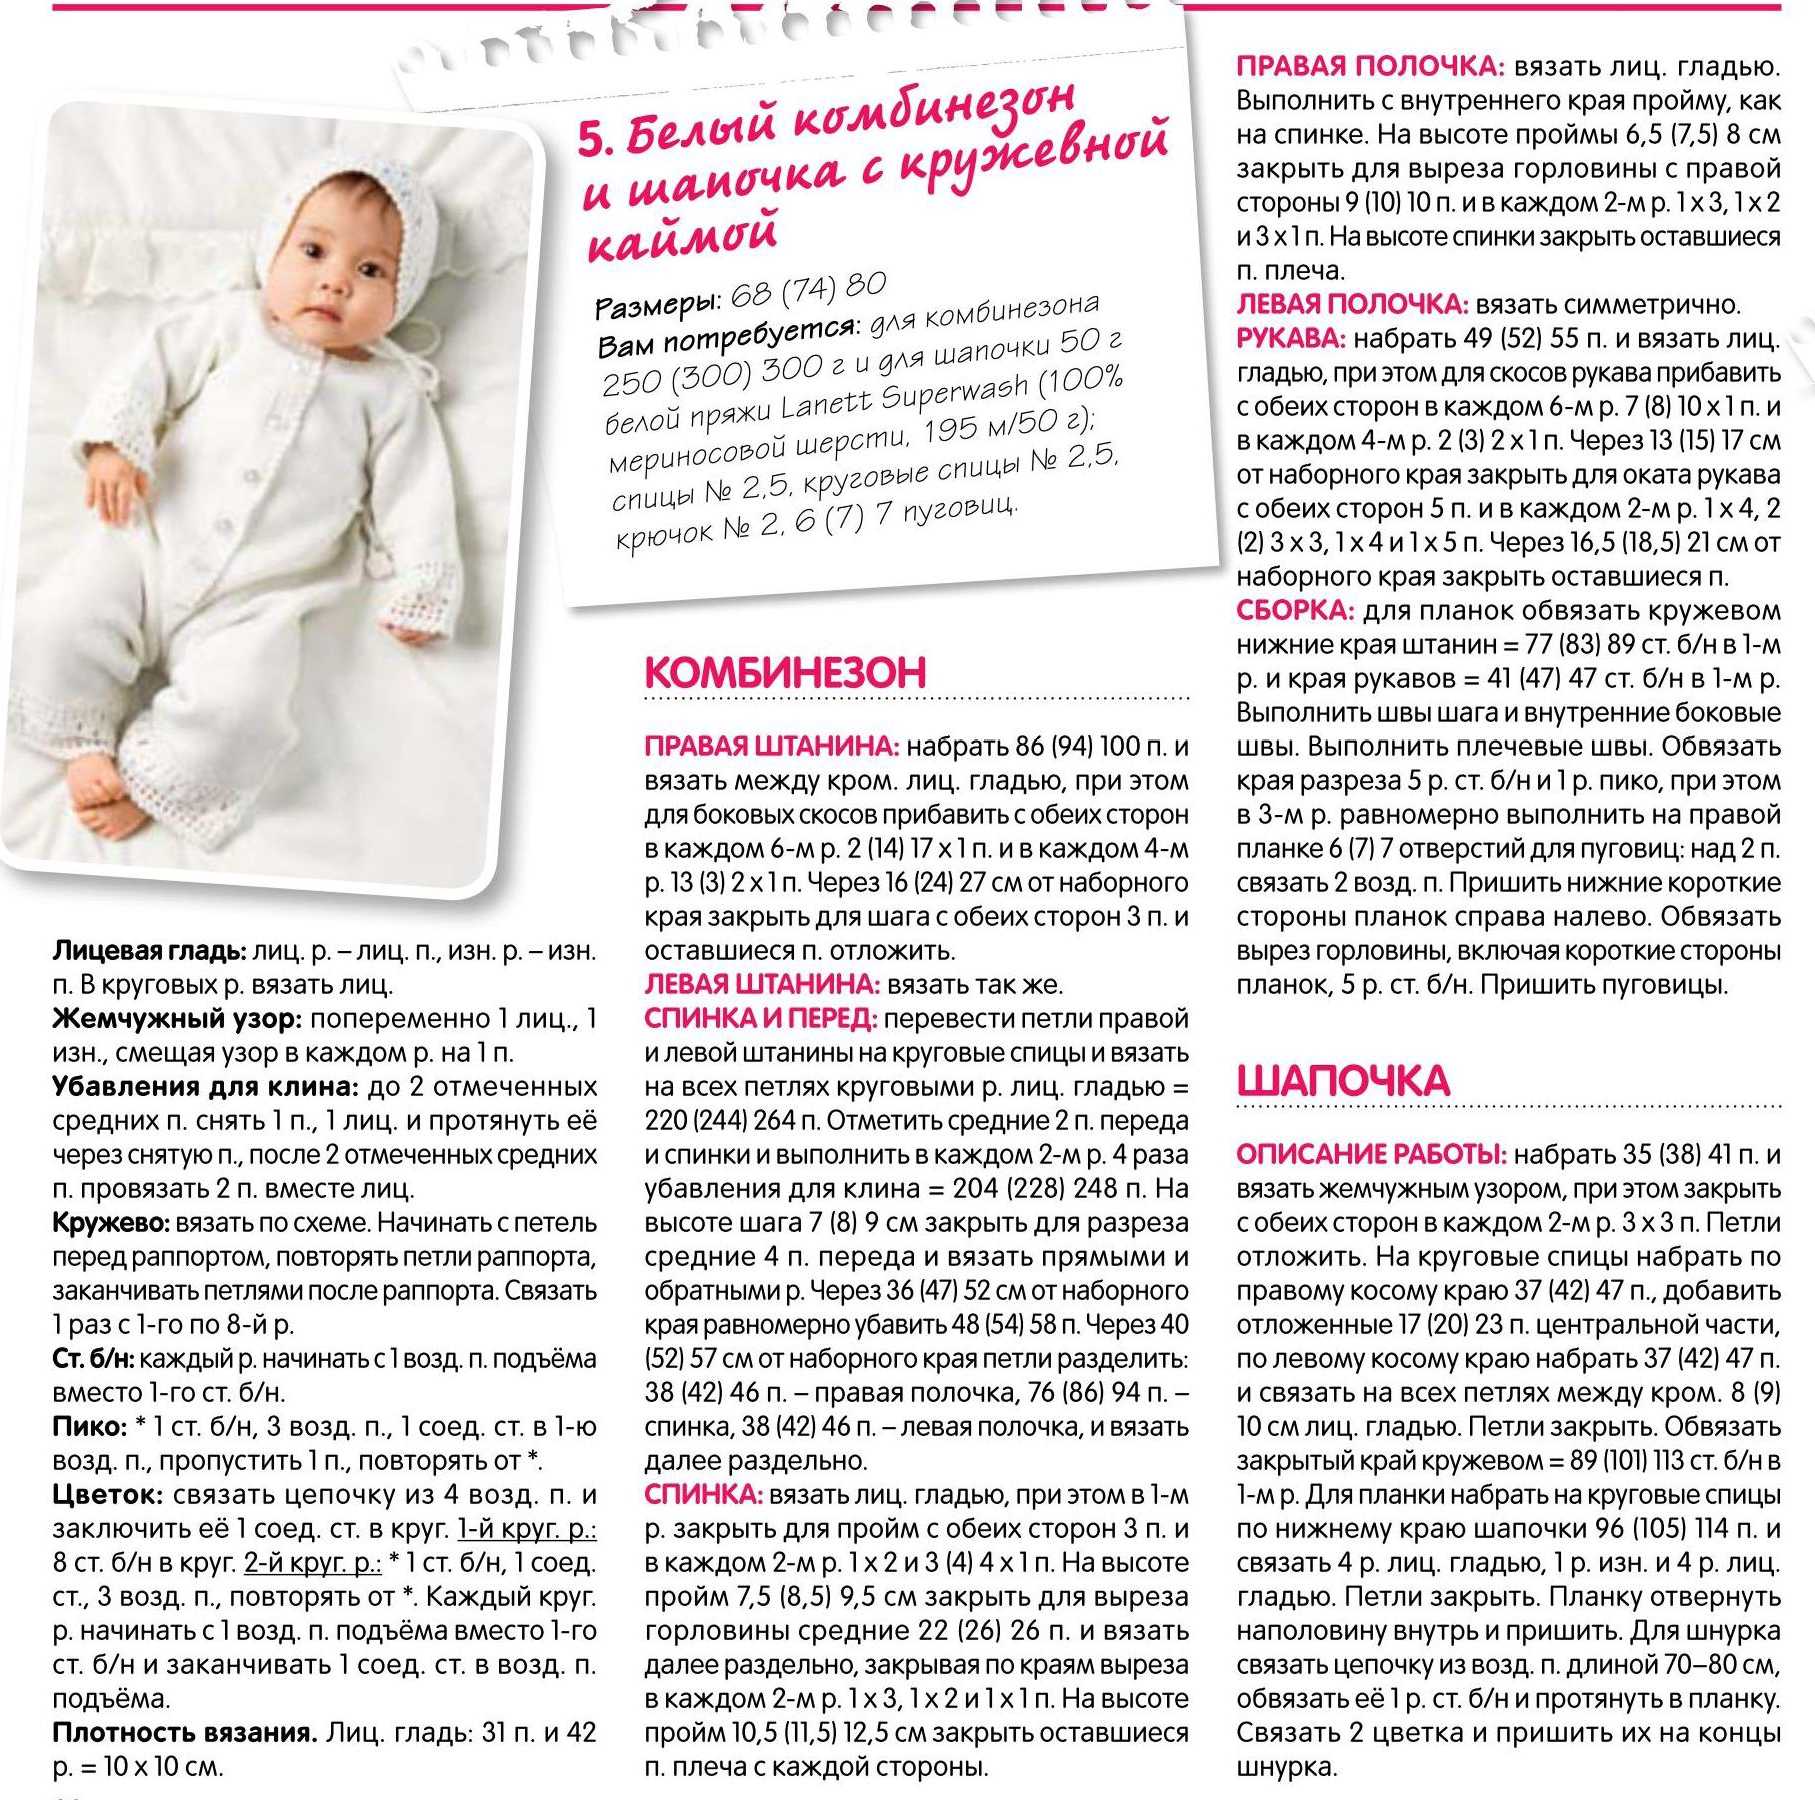 Как связать комбинезон для малыша от 0 до 6 месяцев спицами | все материалы и статьи на тему комбинезонов